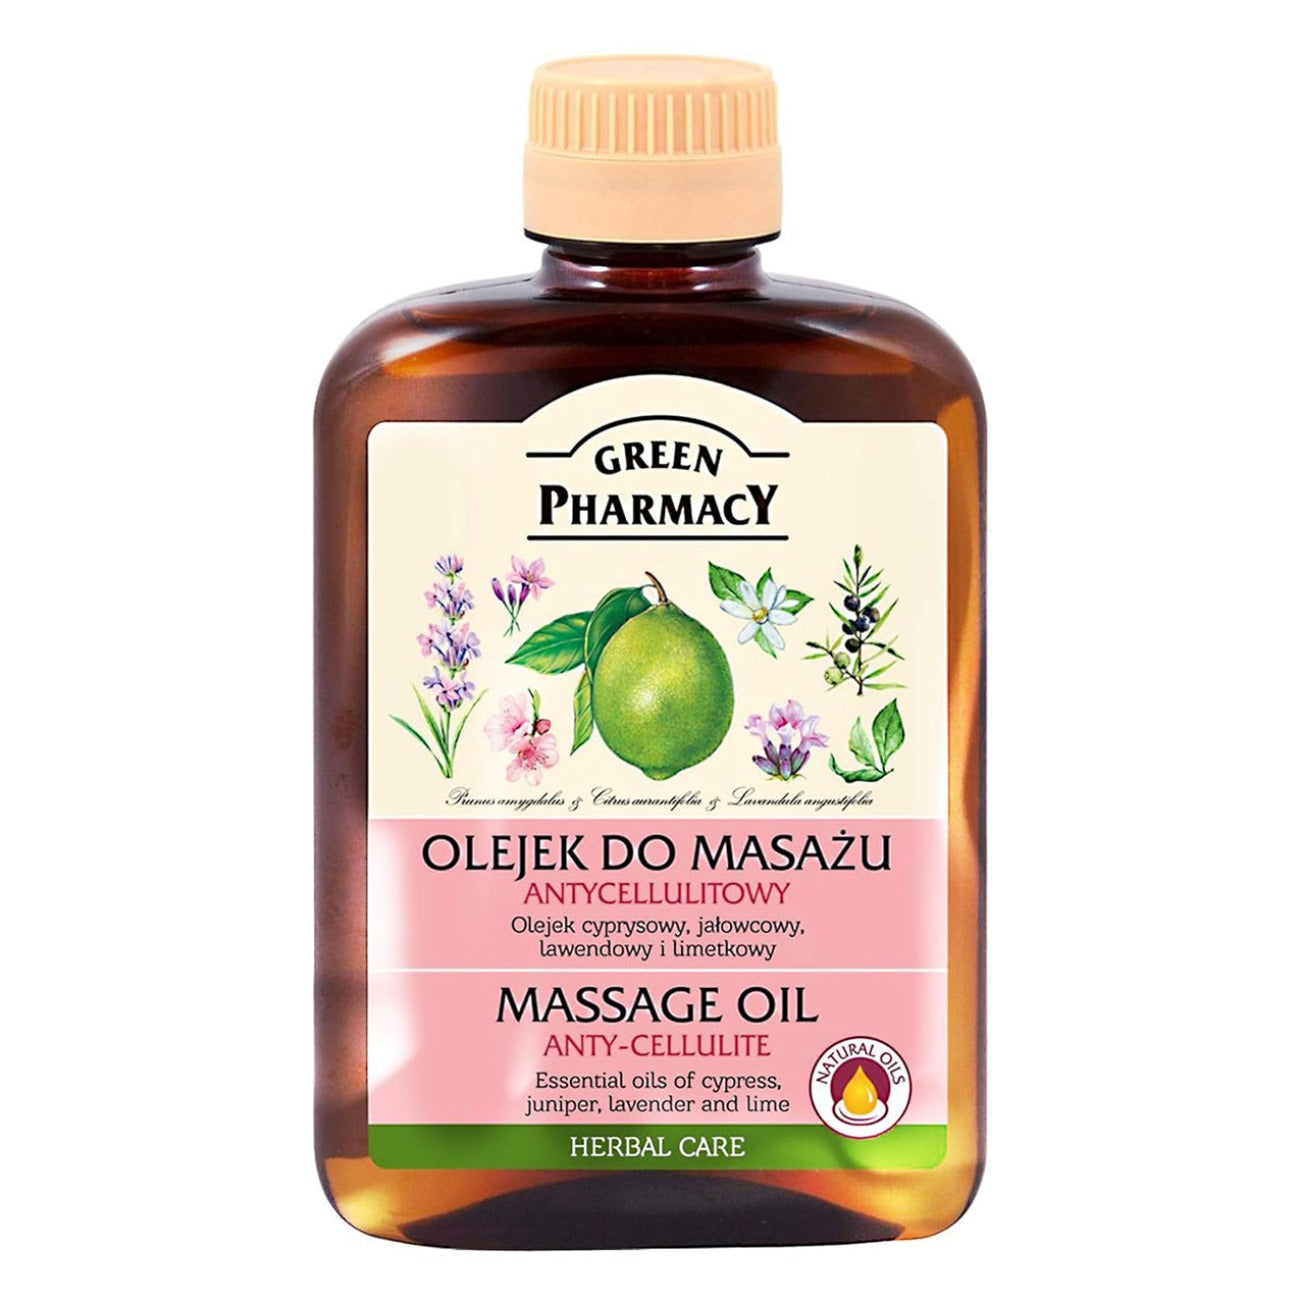 Body Massage Oil Anti Cellulite 200ml